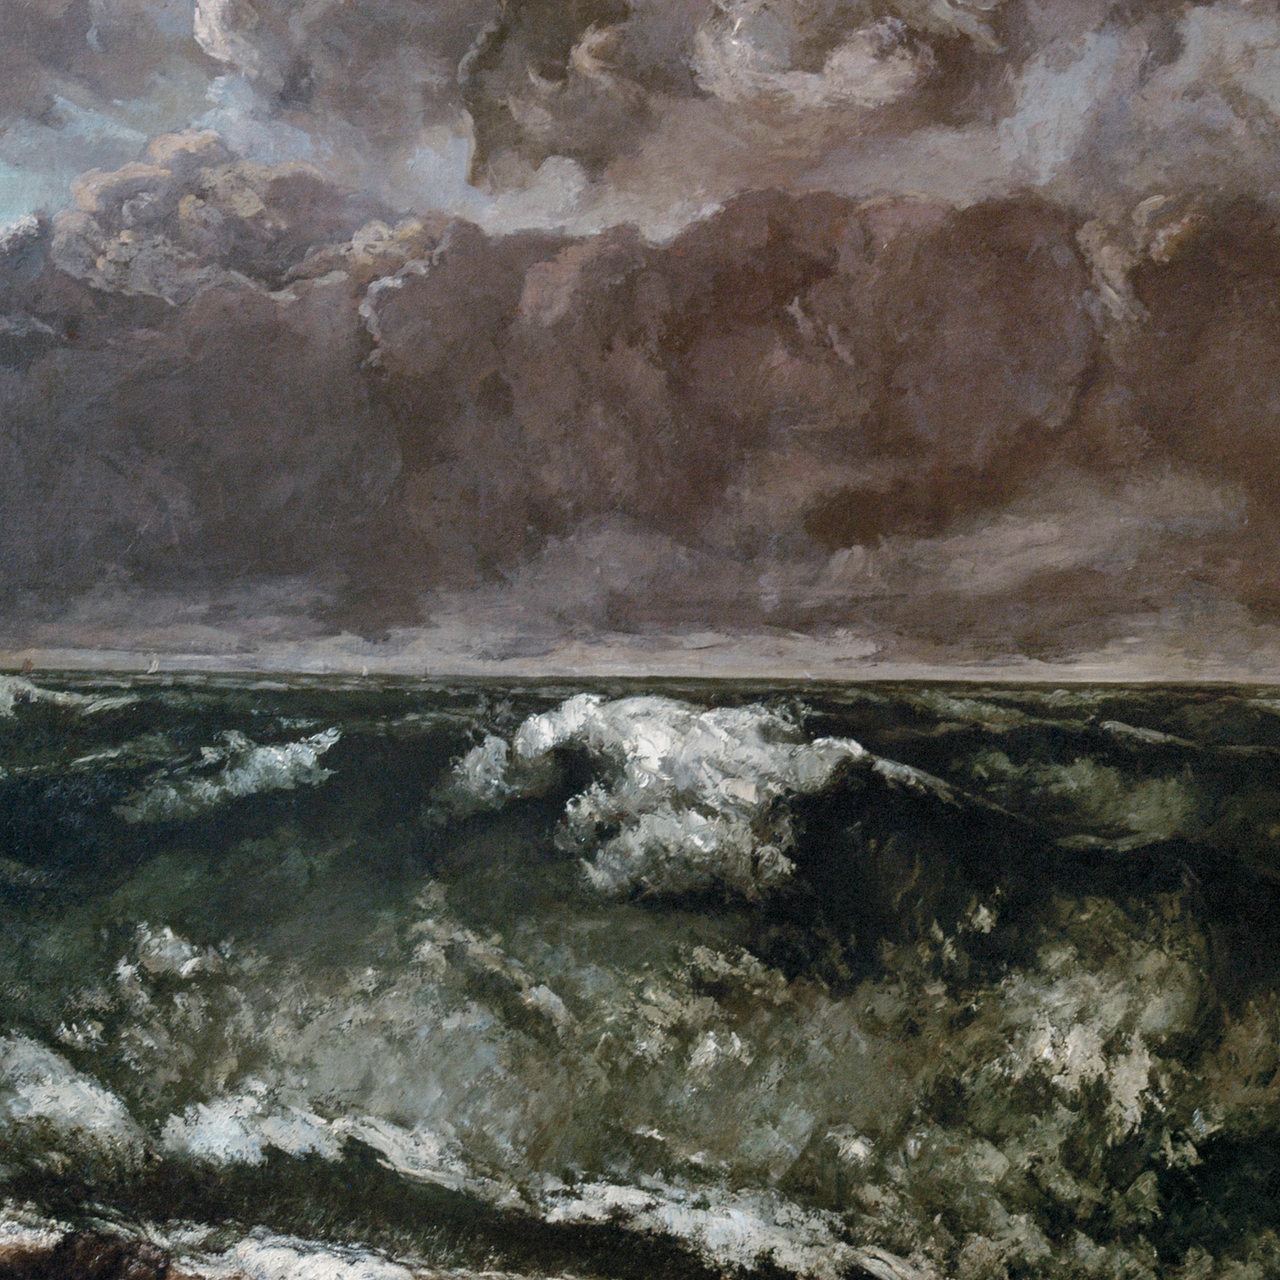 Kunstwerk von Gustave Courbet "Die Welle", 1869/1870